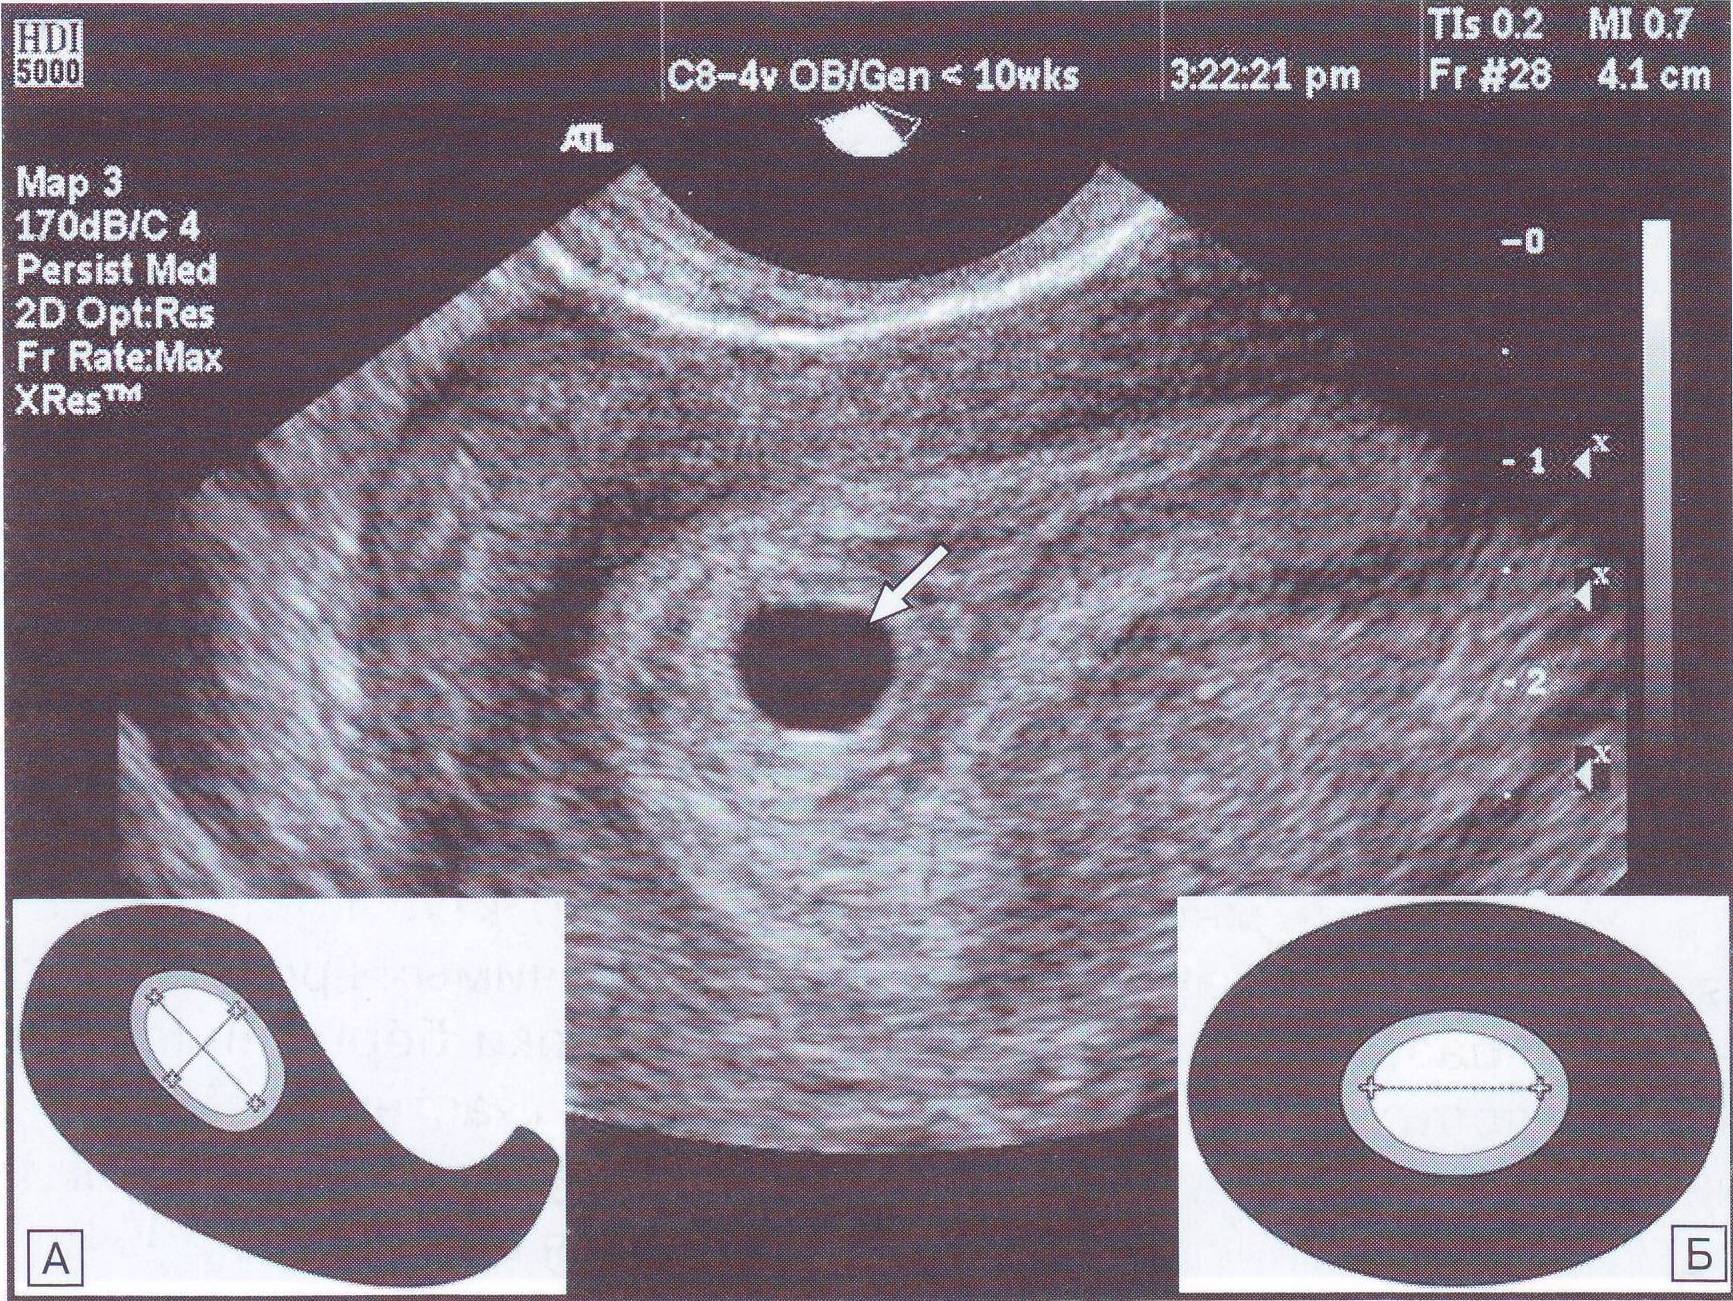 Курс 6 недель. Плодное яйцо 4мм эмбрион. УЗИ матки на 5 неделе беременности. Эмбрион на 5 неделе беременности УЗИ. Плодное яйцо по УЗИ 5-6 недель.